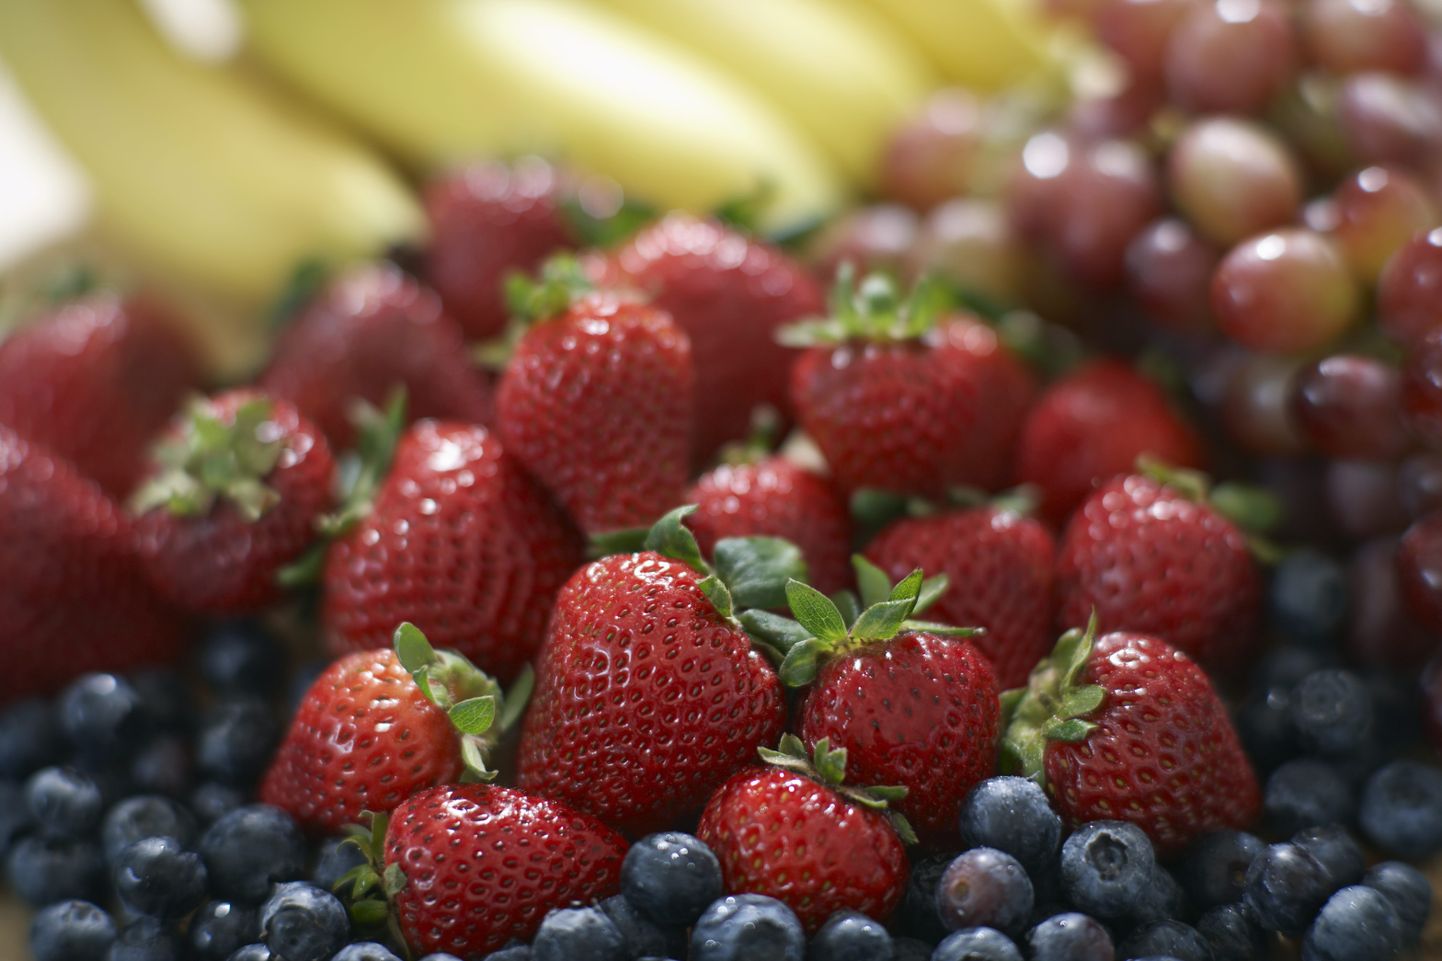 Maasikaid võib niisama süüa või neist maitsvaid toite valmistada.